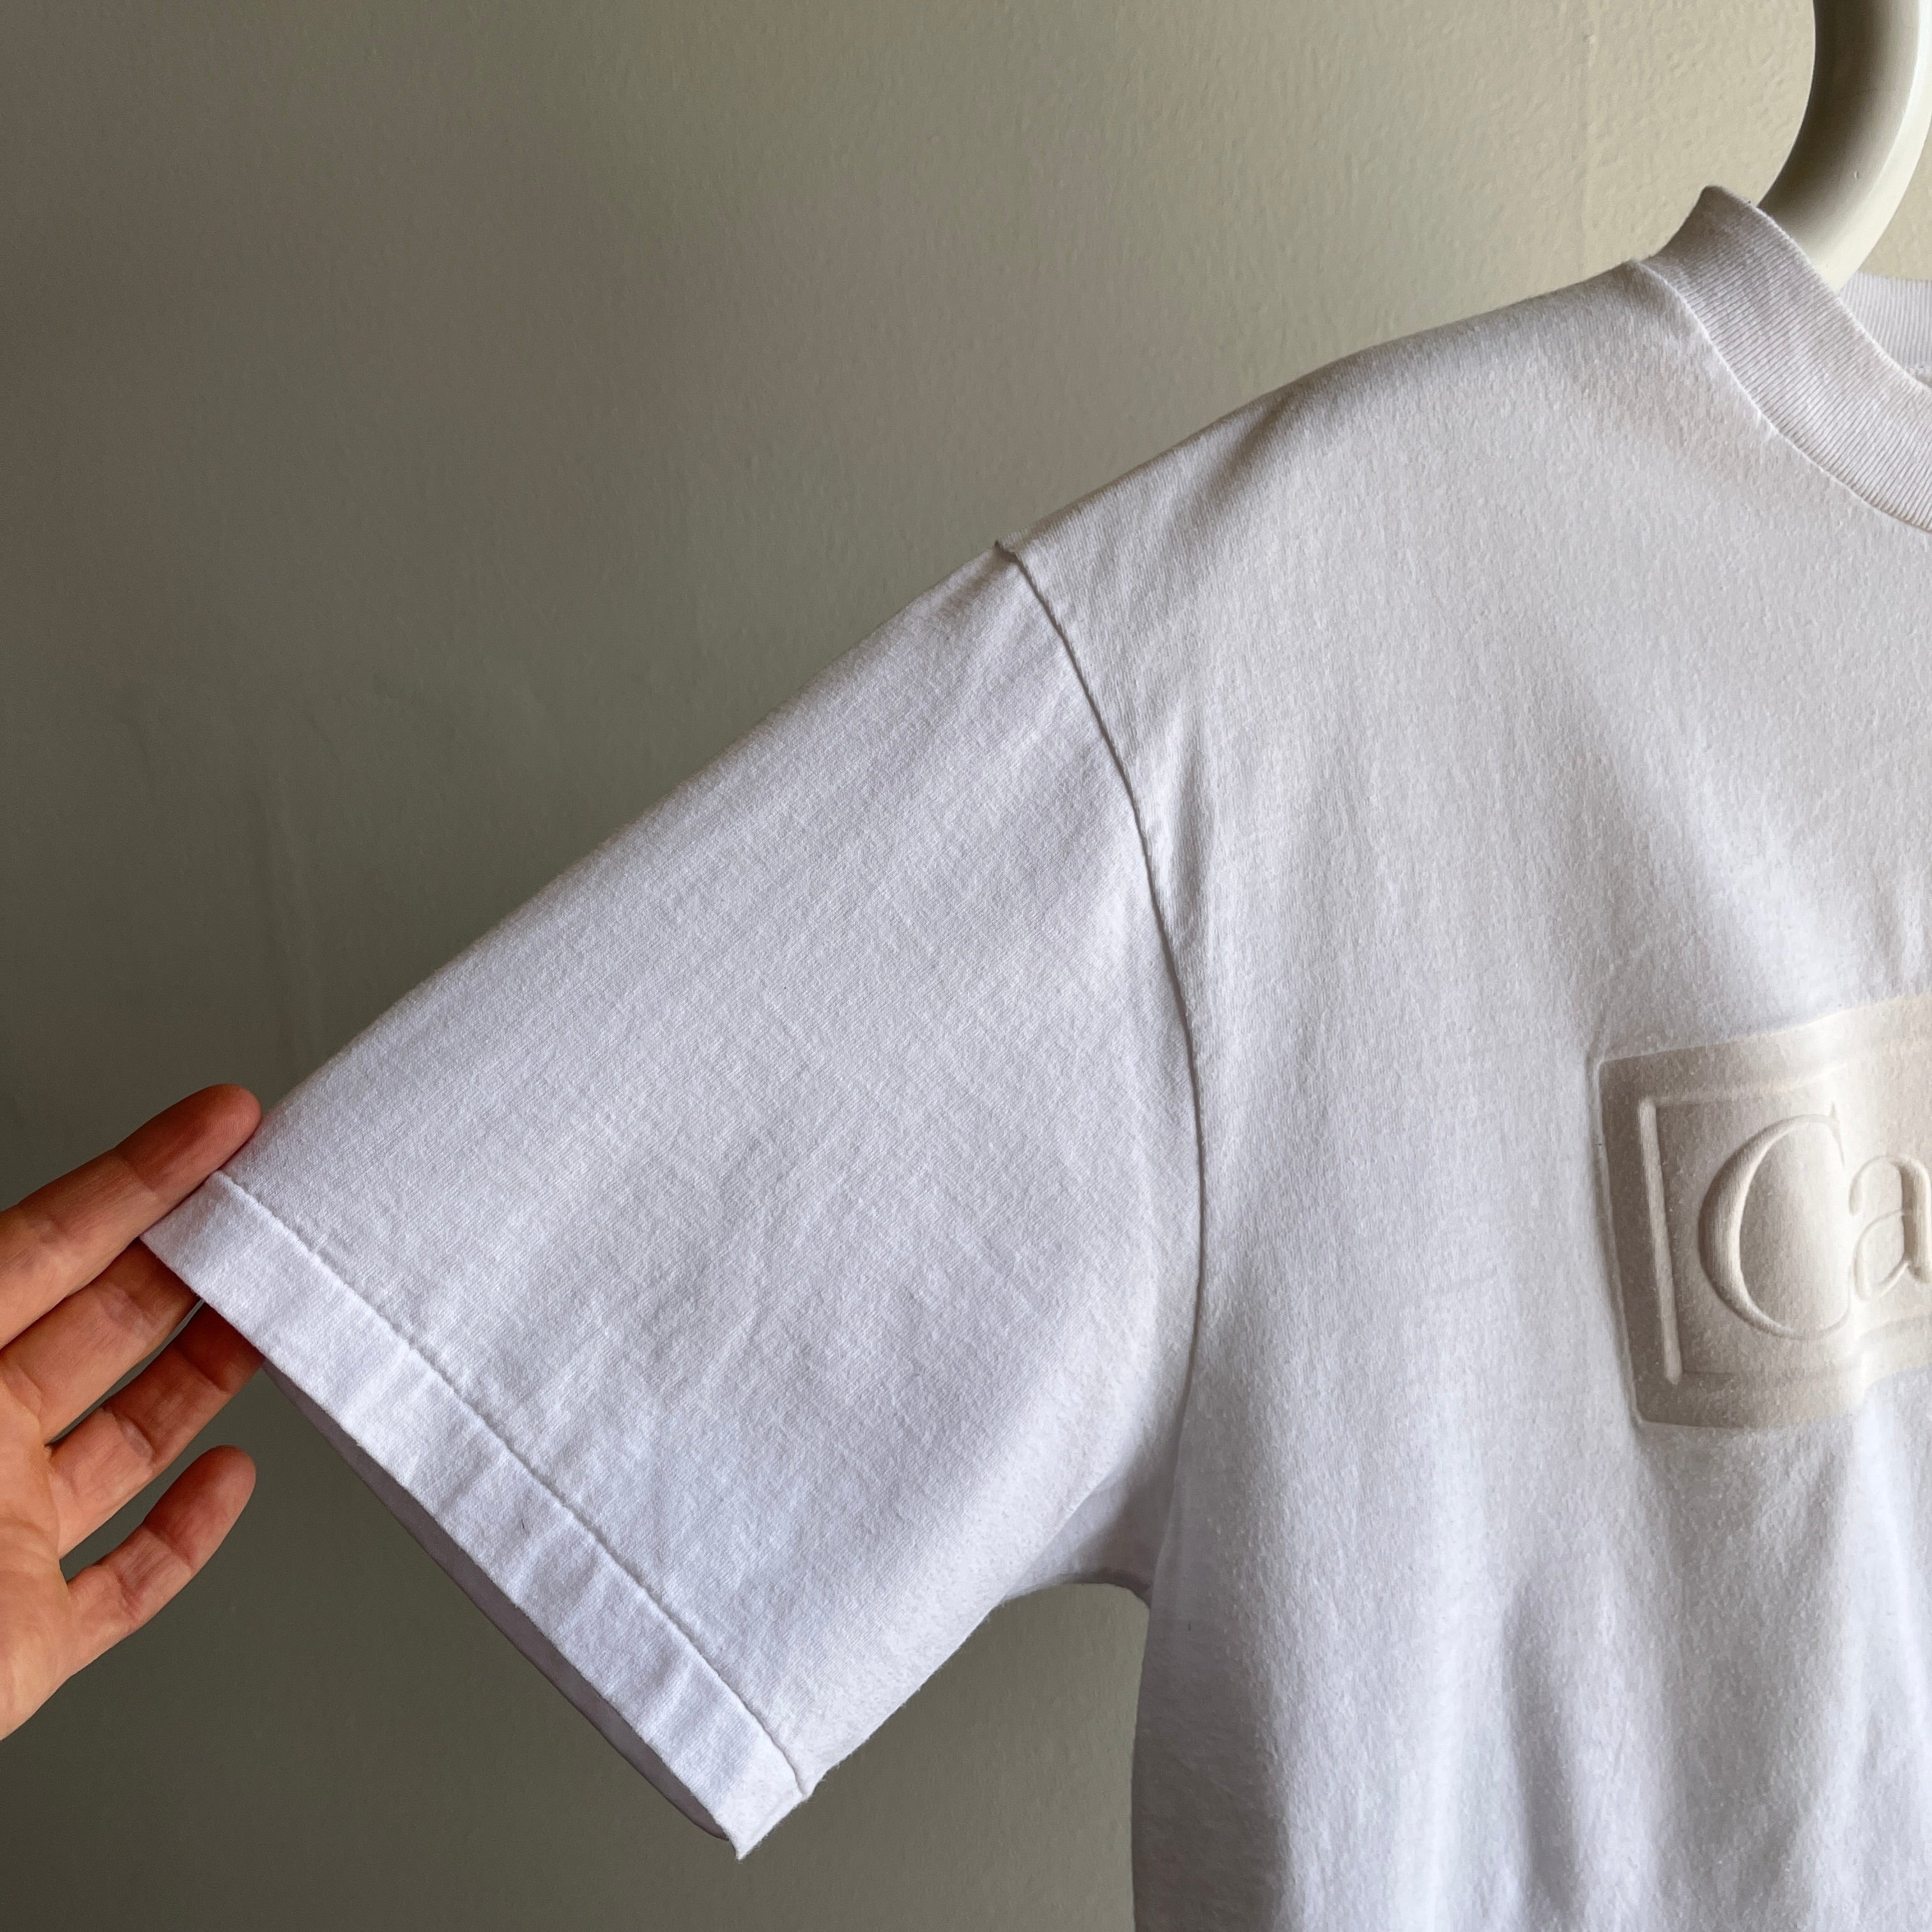 T-shirt Canada surdimensionné fabriqué au Canada des années 1990